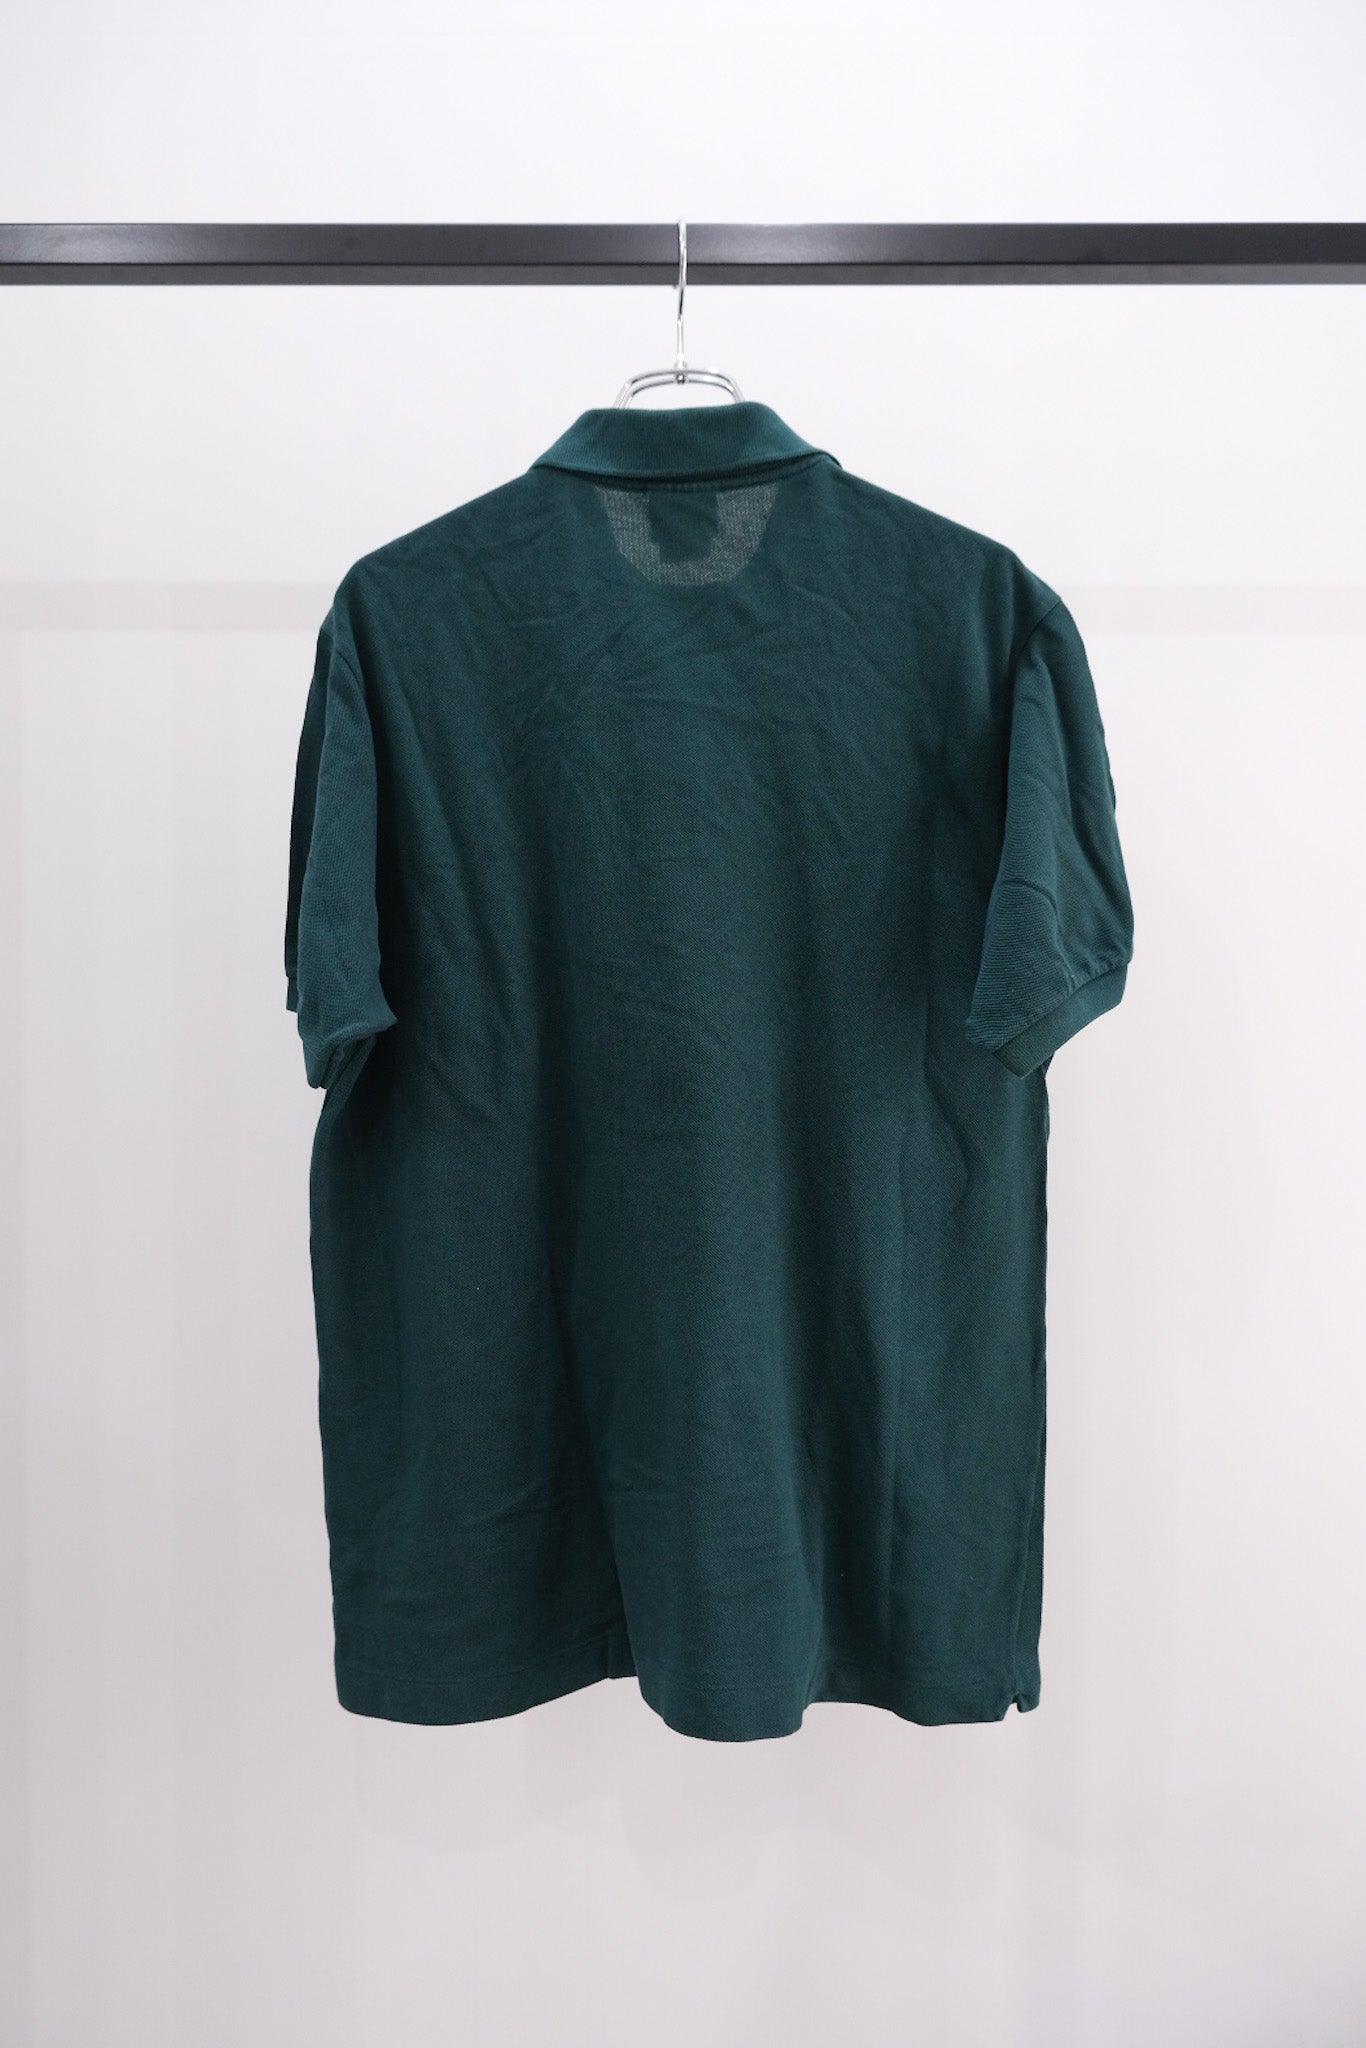 80-90's LACOSTE Polo Shirt Green